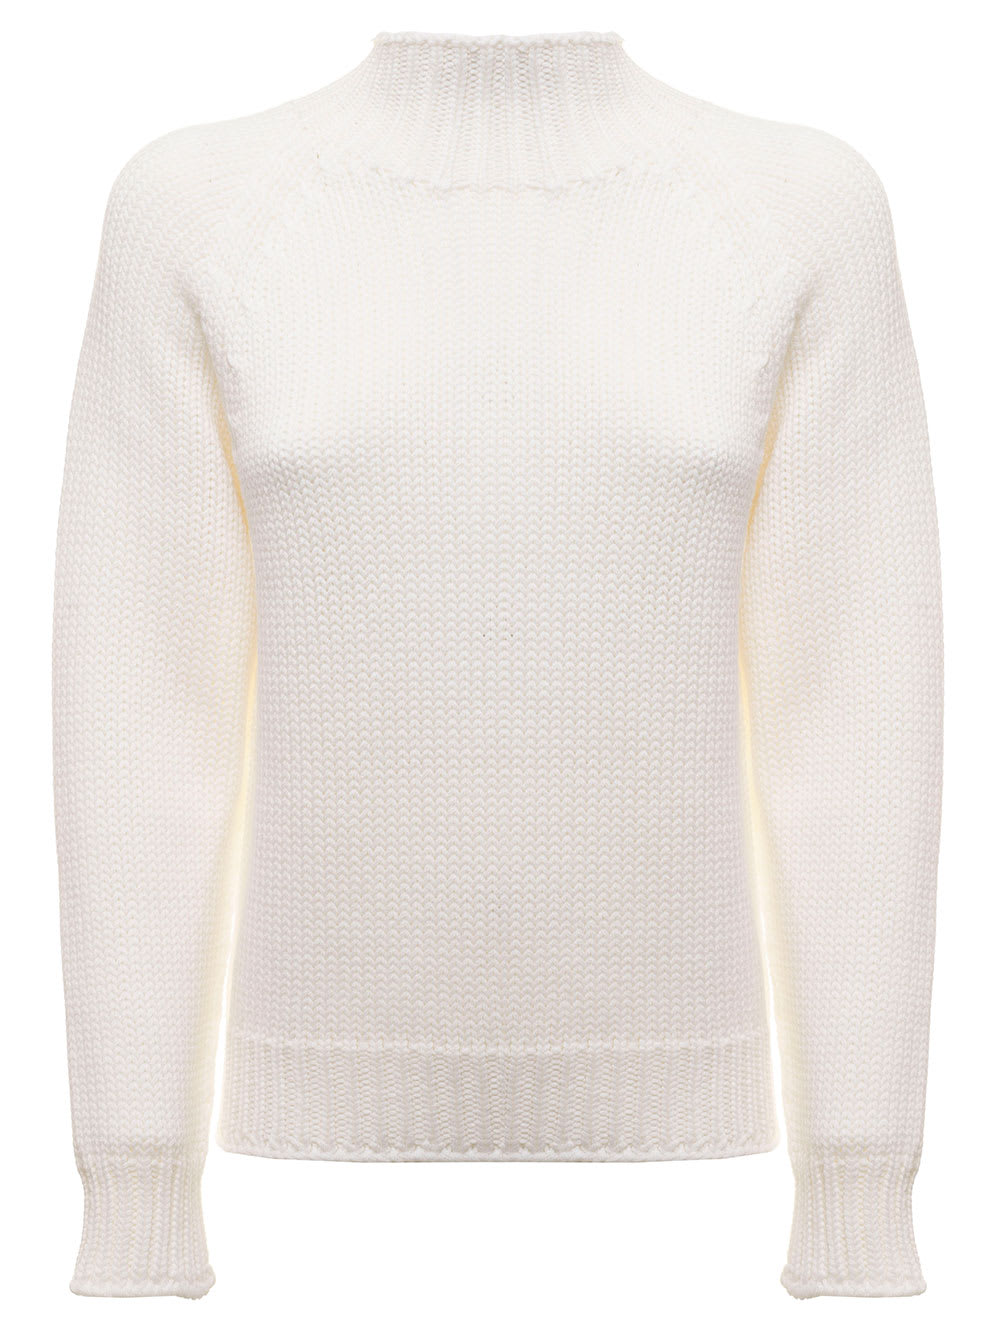 White Merino Wool High Collar Sweater Fabiana Filippi Woman